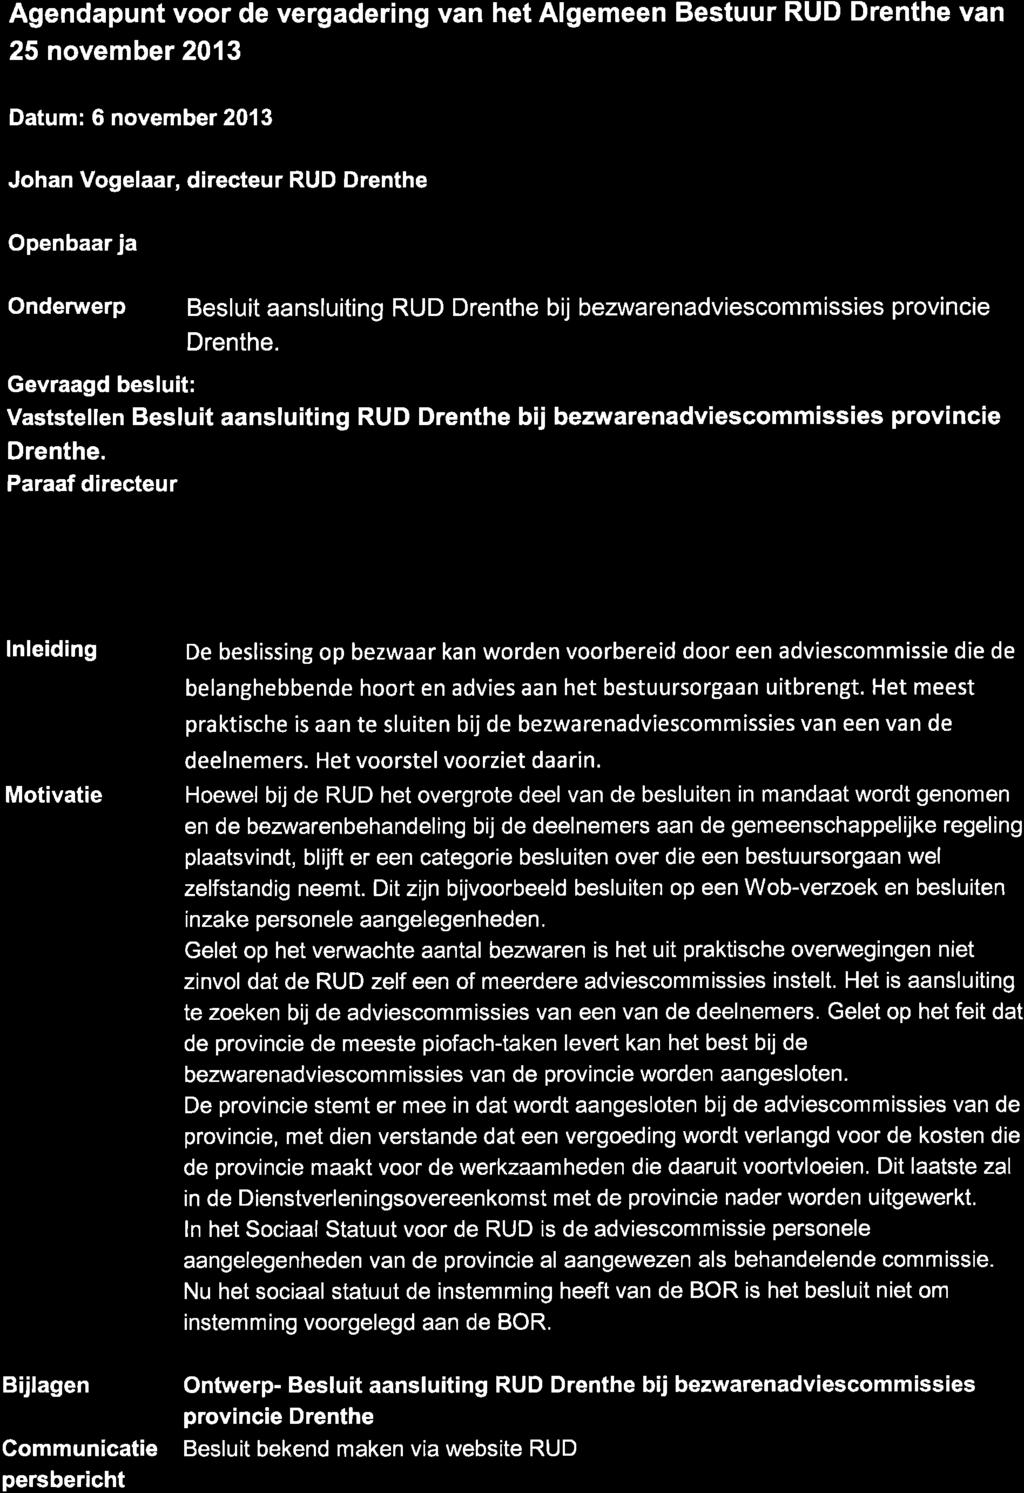 *---7 t Agendapunt voor de vergadering van het Algemeen Bestuur RUD Drenthe van 25 november 2013 Datum: 6 novembe 2013 Johan Vogelaar, directeur RUD Drenthe Openbaar ja Onderuverp Besluit aansluiting